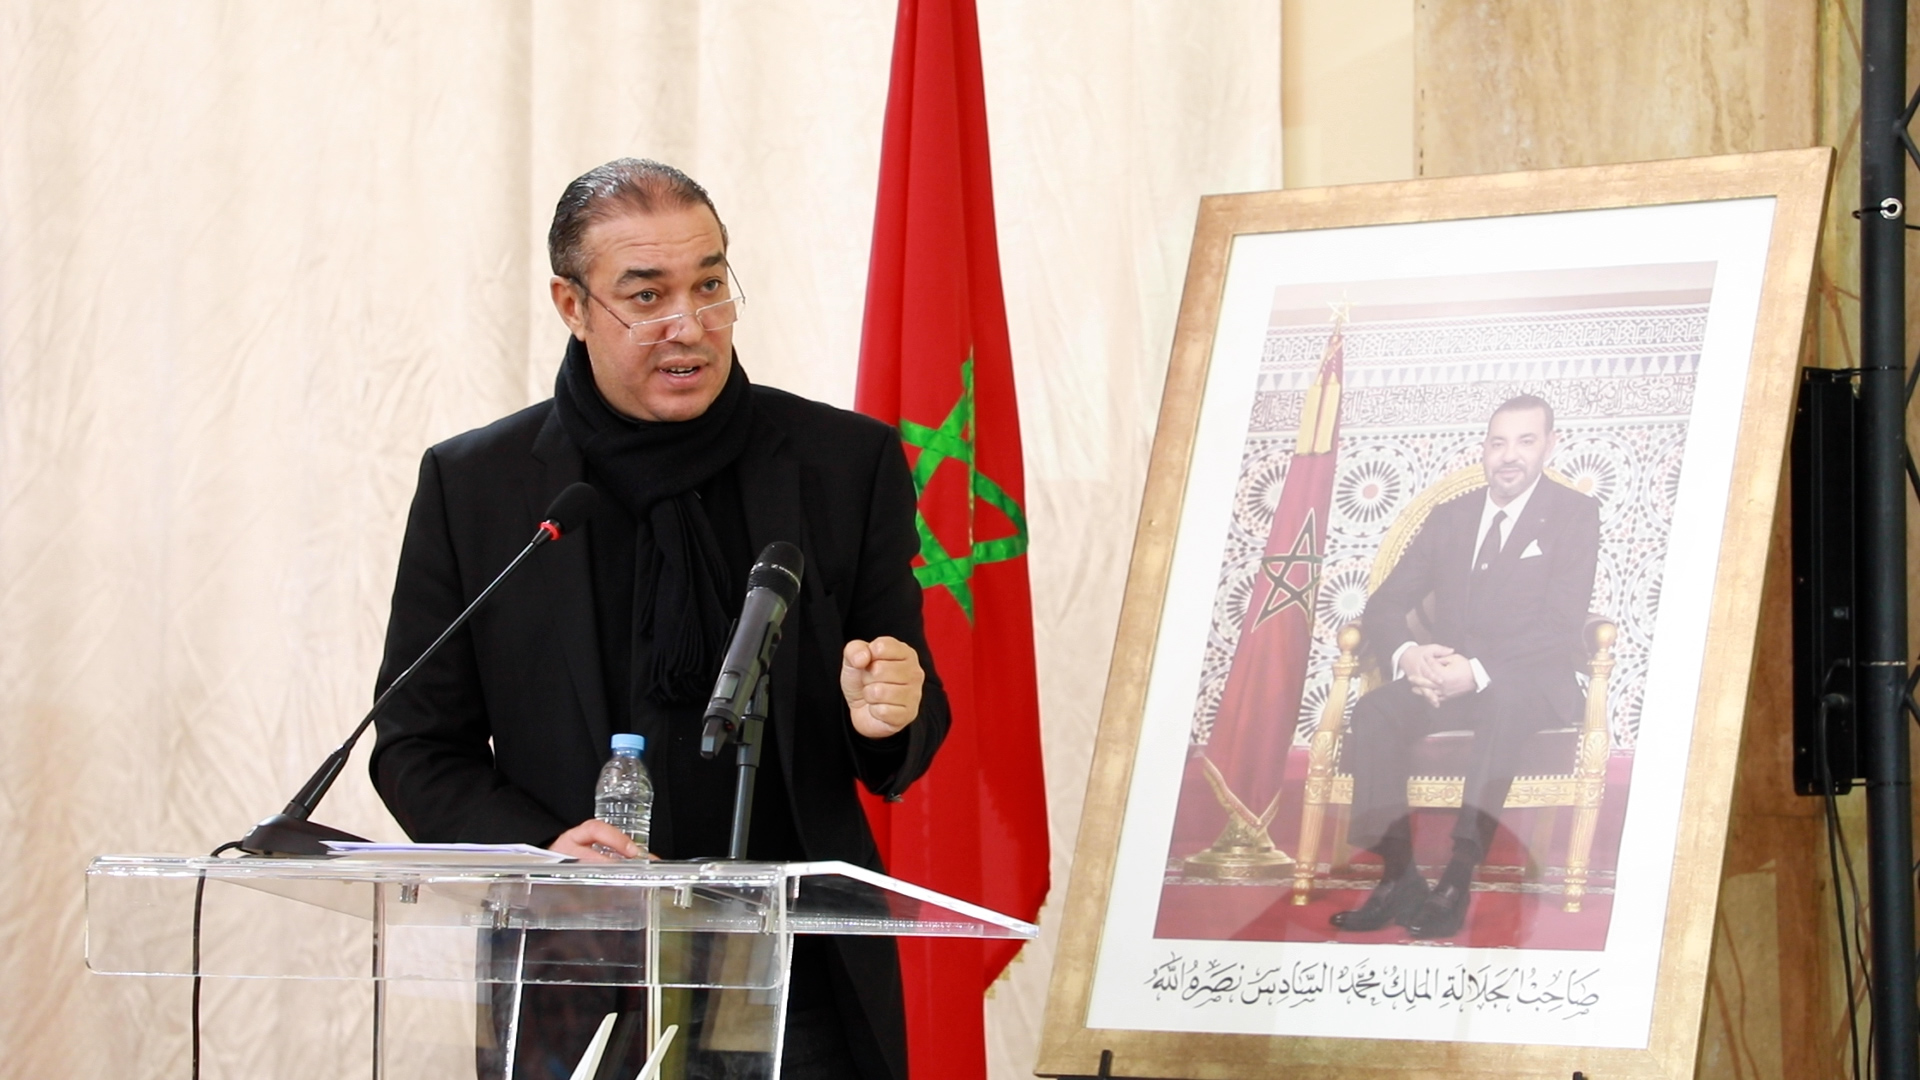 أوزين: الشعب الجزائري تواق لفتح الحدود البرية والجوية مع المغرب ورئيسة البرلمان الإنديني كانت “مسخرة” فقط